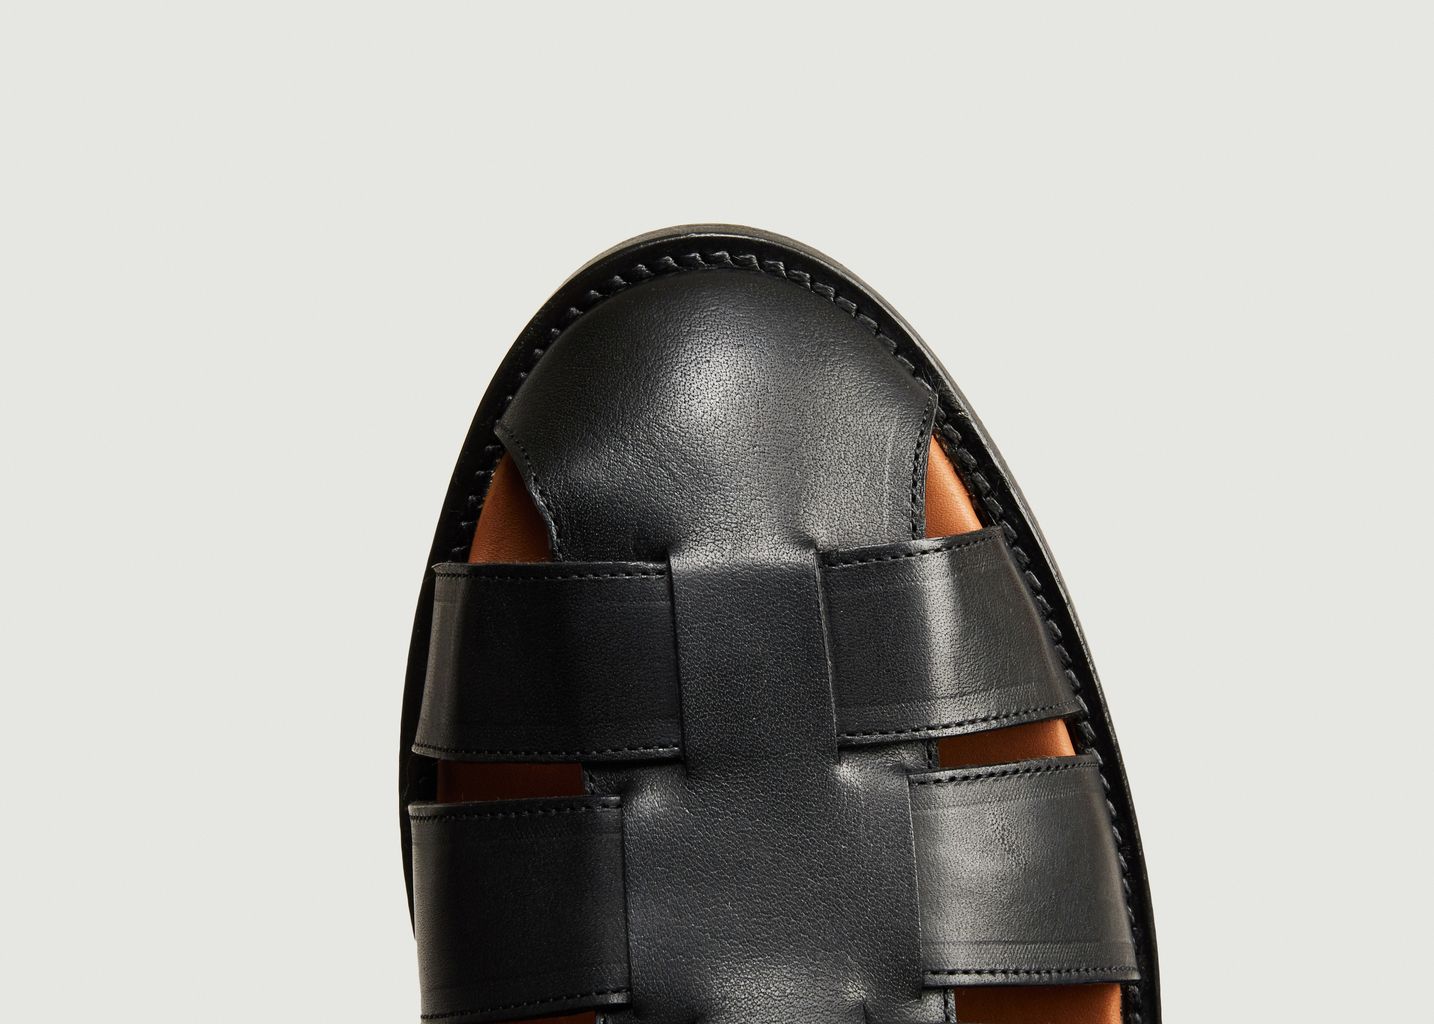 Patras leather sandals - Anthology Paris